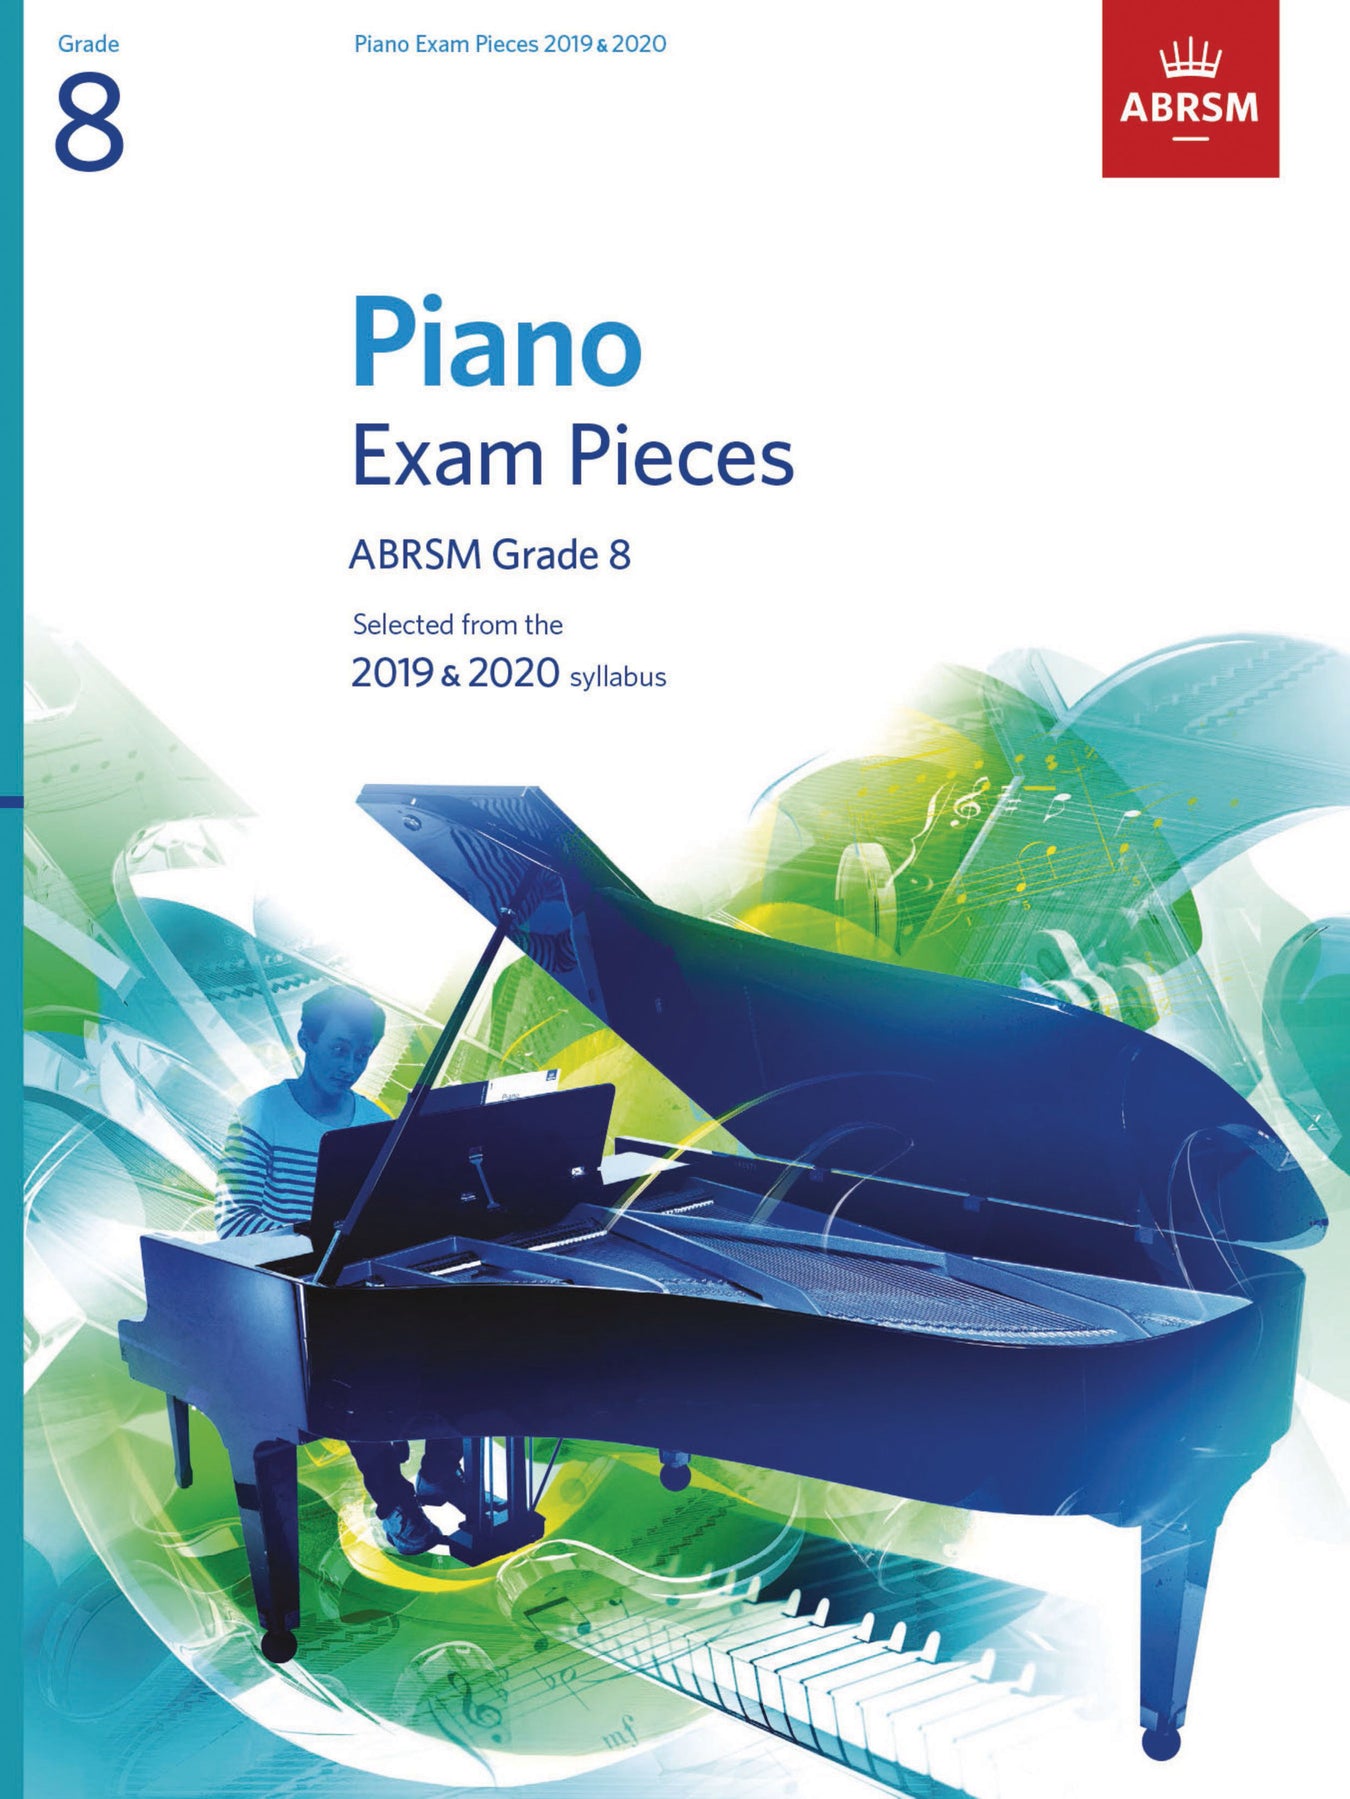 ABRSM 2019-2020 鋼琴考試書籍新春優惠